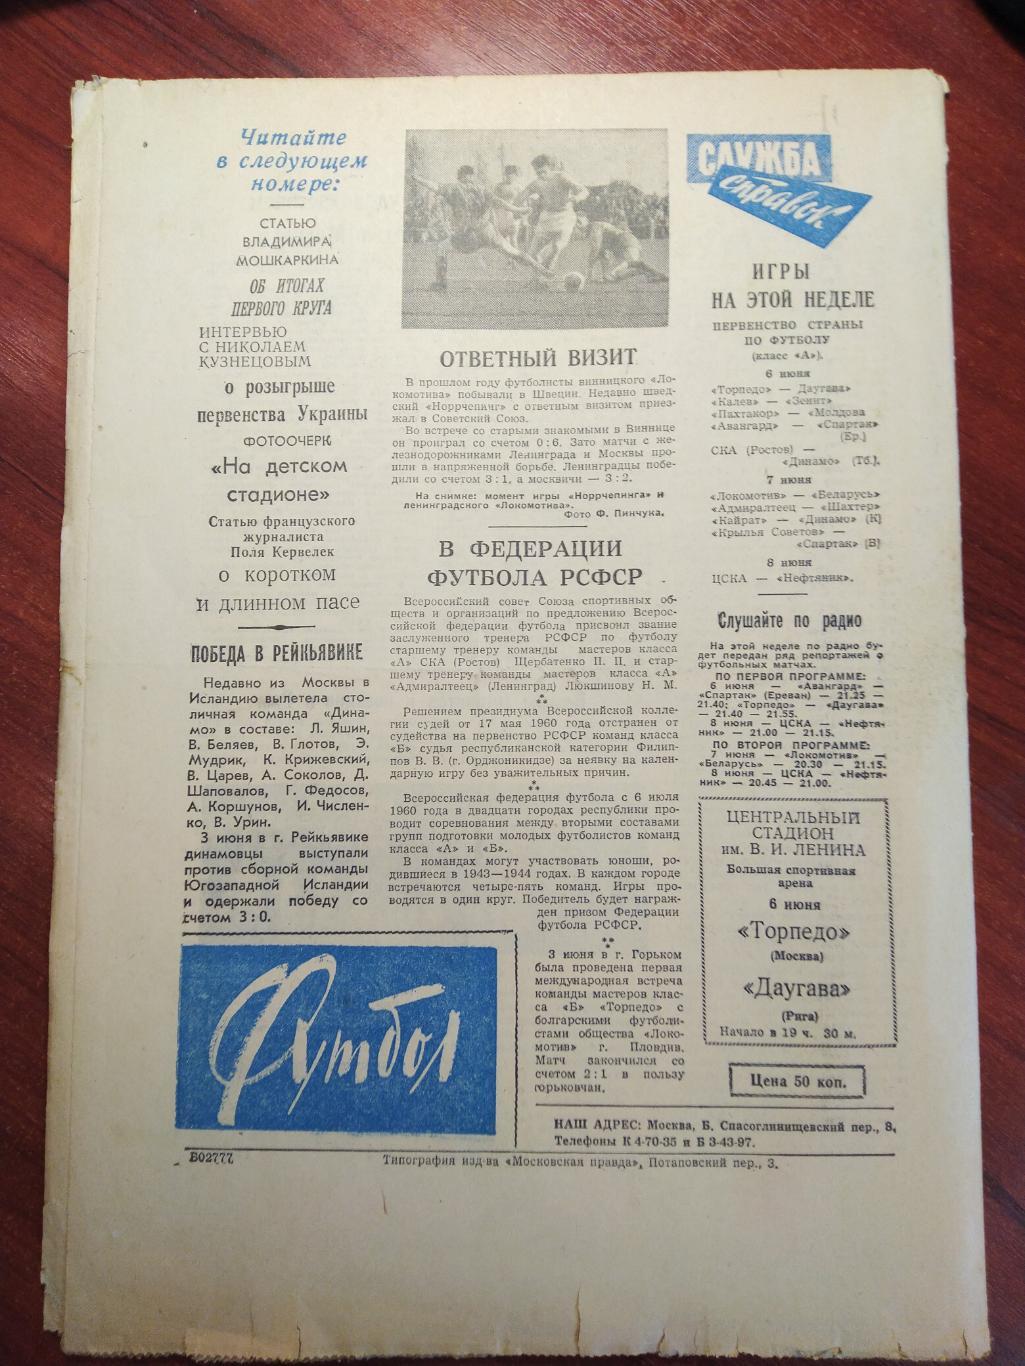 Еженедельник Футбол №2 от 5 июня 1960.Первый год выпуска! Московский выпуск 1